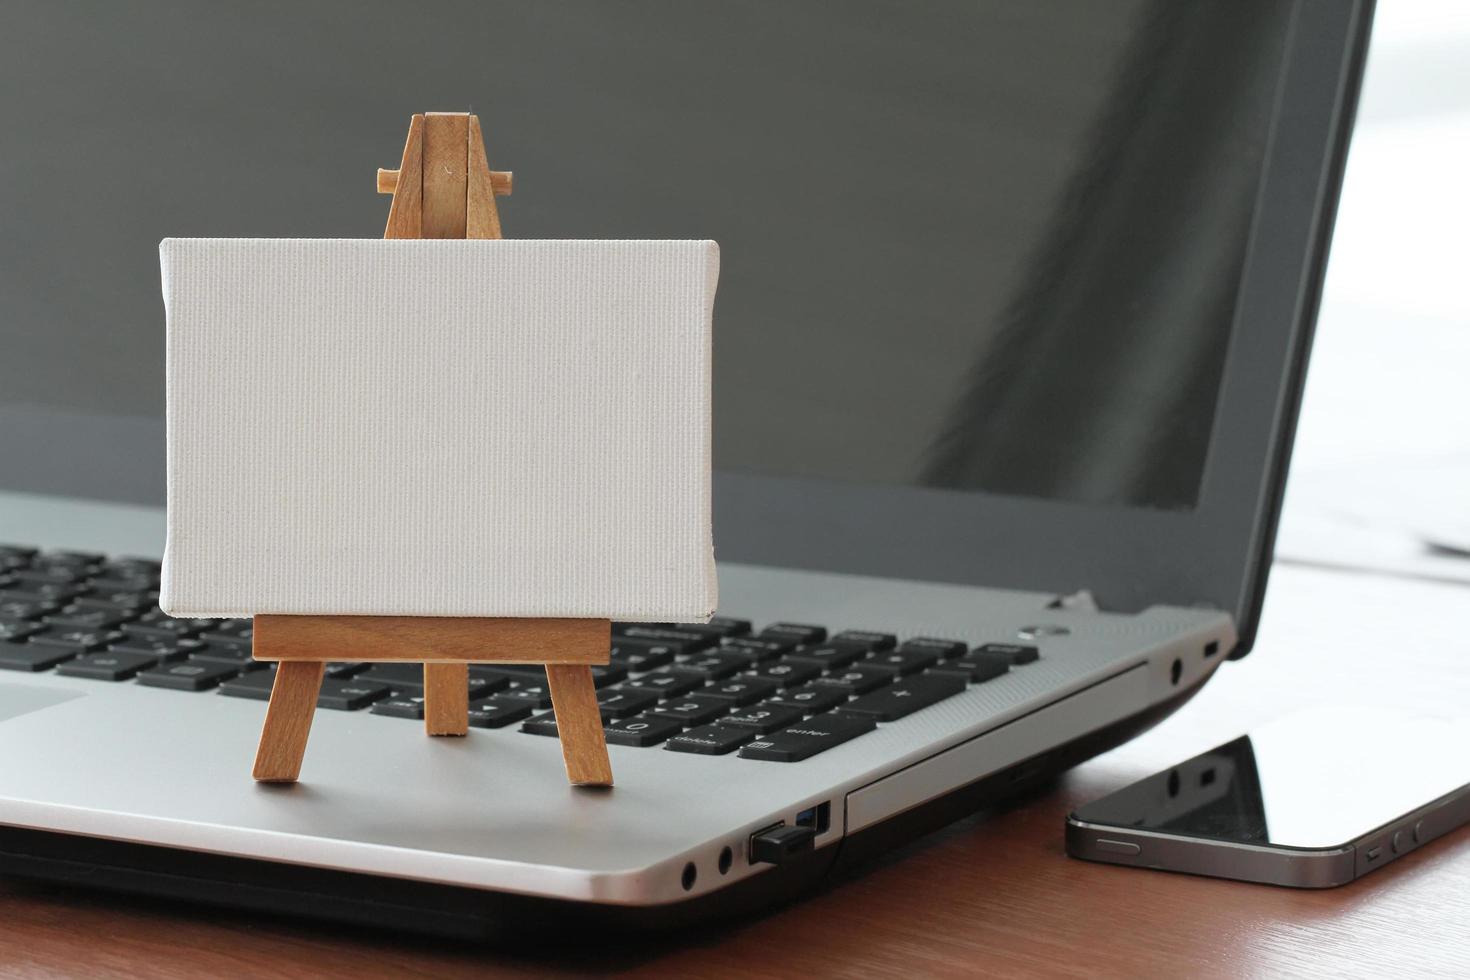 Lienzo en blanco y caballete de madera en la computadora portátil como concepto foto